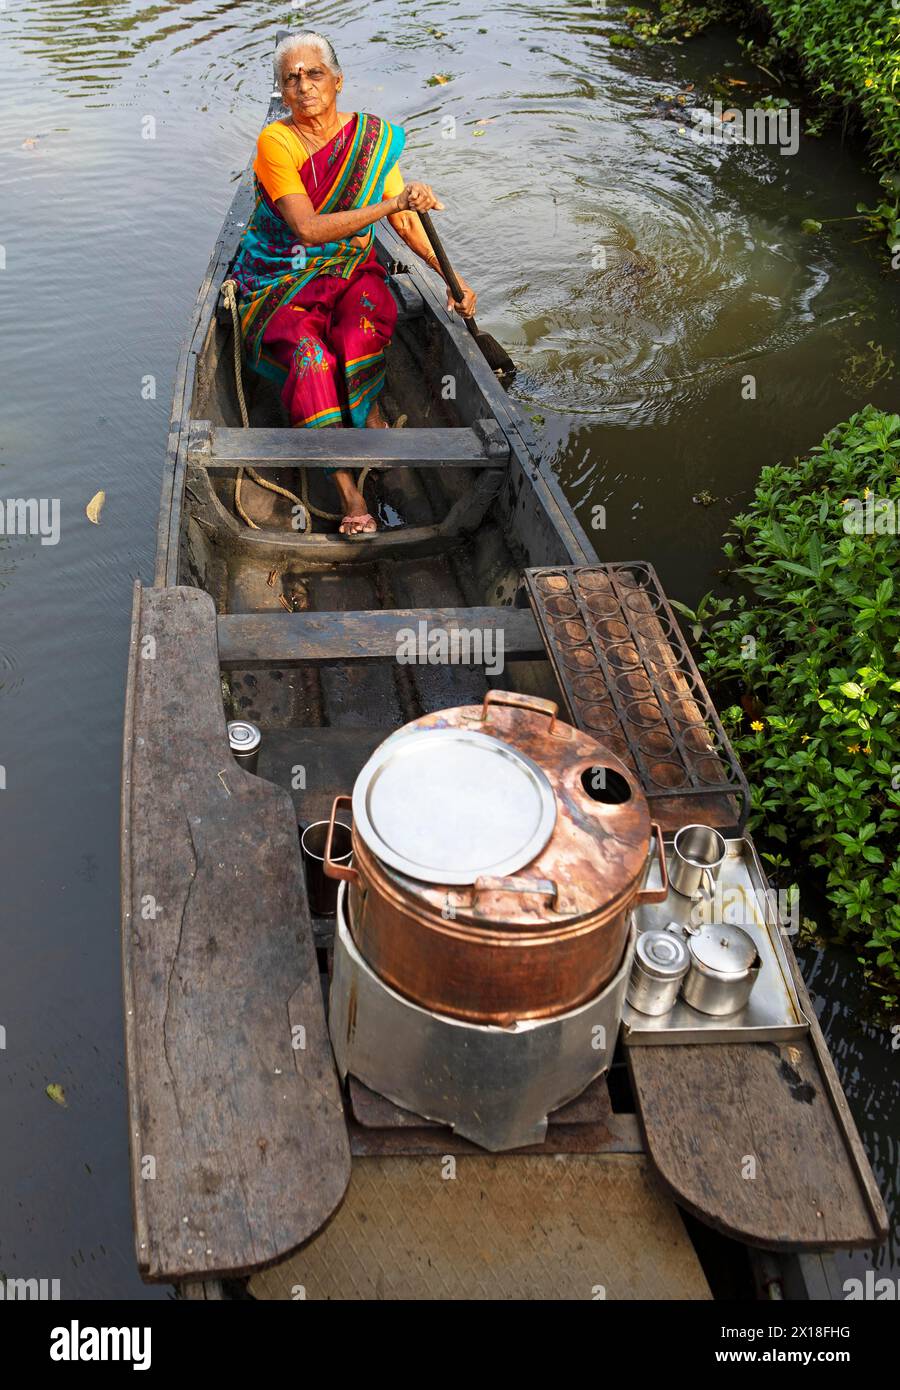 Tealady, 83 ans, pagaie dans son bateau à travers les backwaters, Kumarakom, Kerala, Inde Banque D'Images